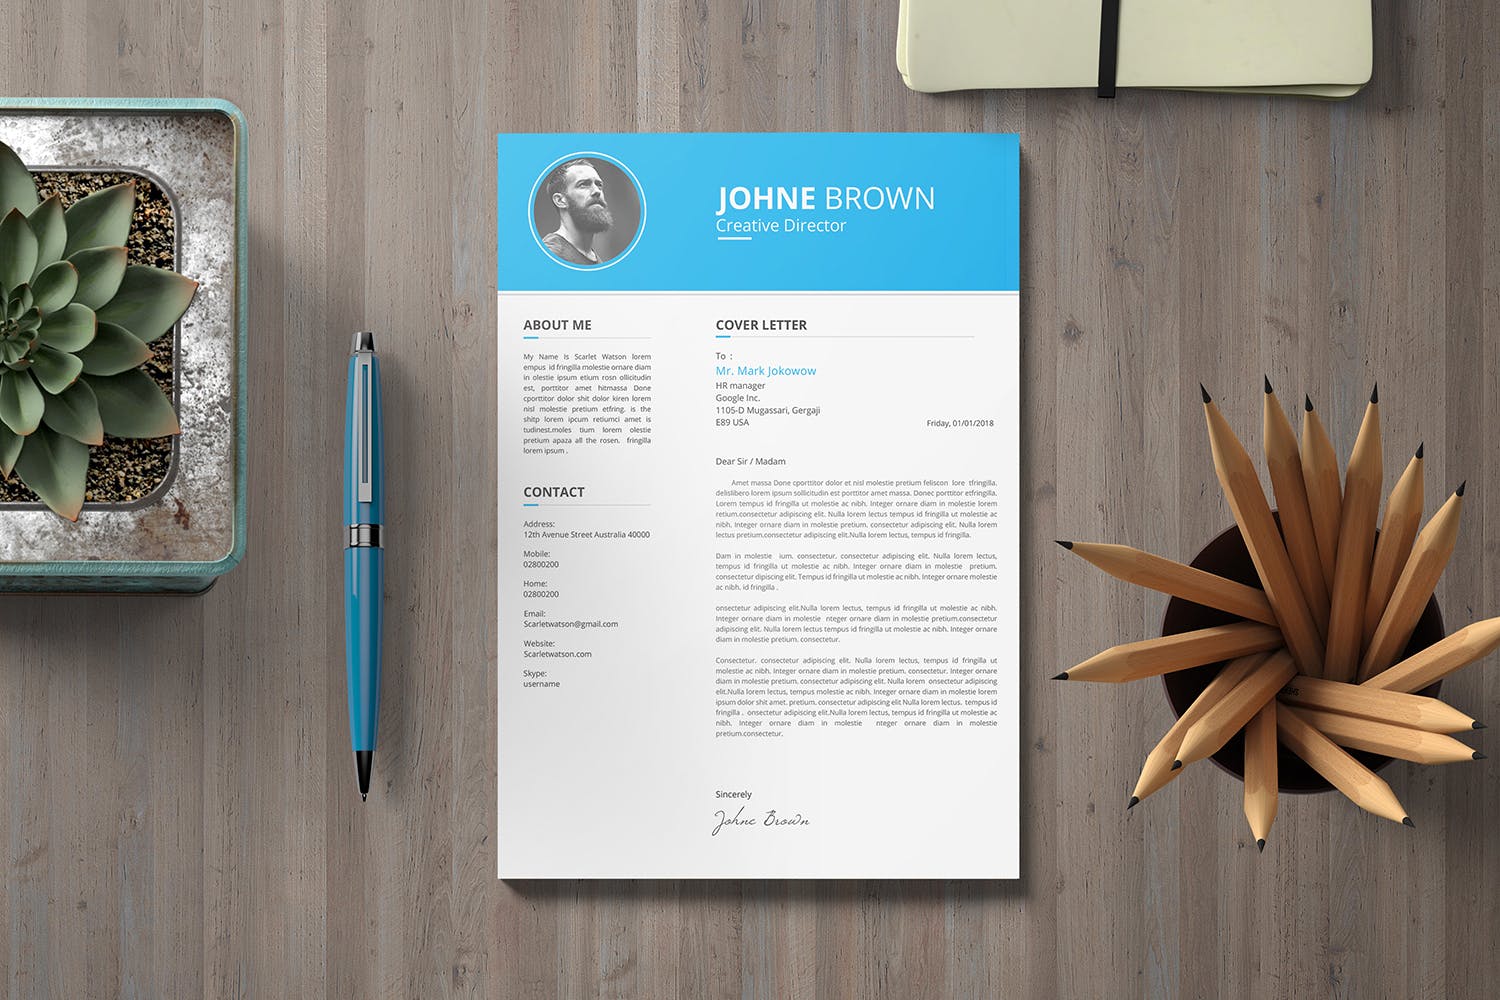 创意总监工作履历表设计模板 CV Resume插图(3)